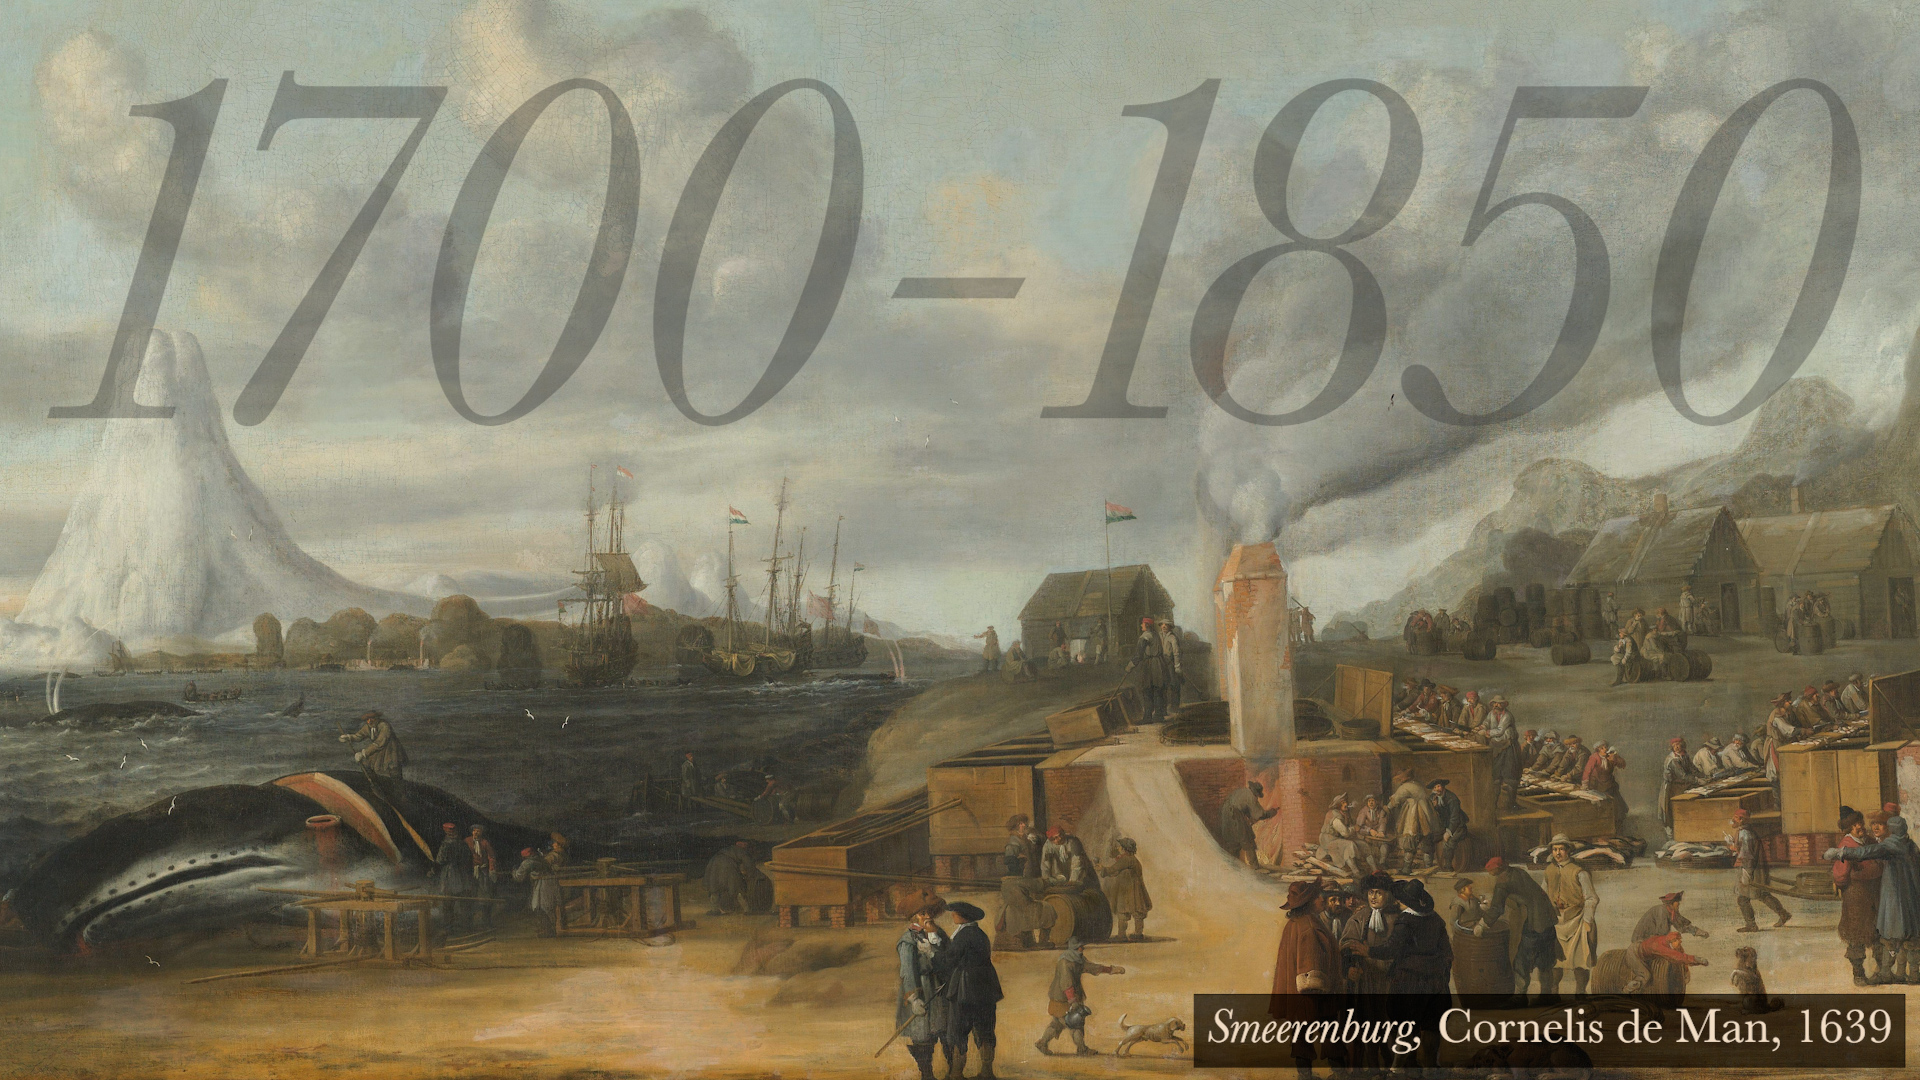 whaling 1700-1850 smeerenburg cornelis de man 1639